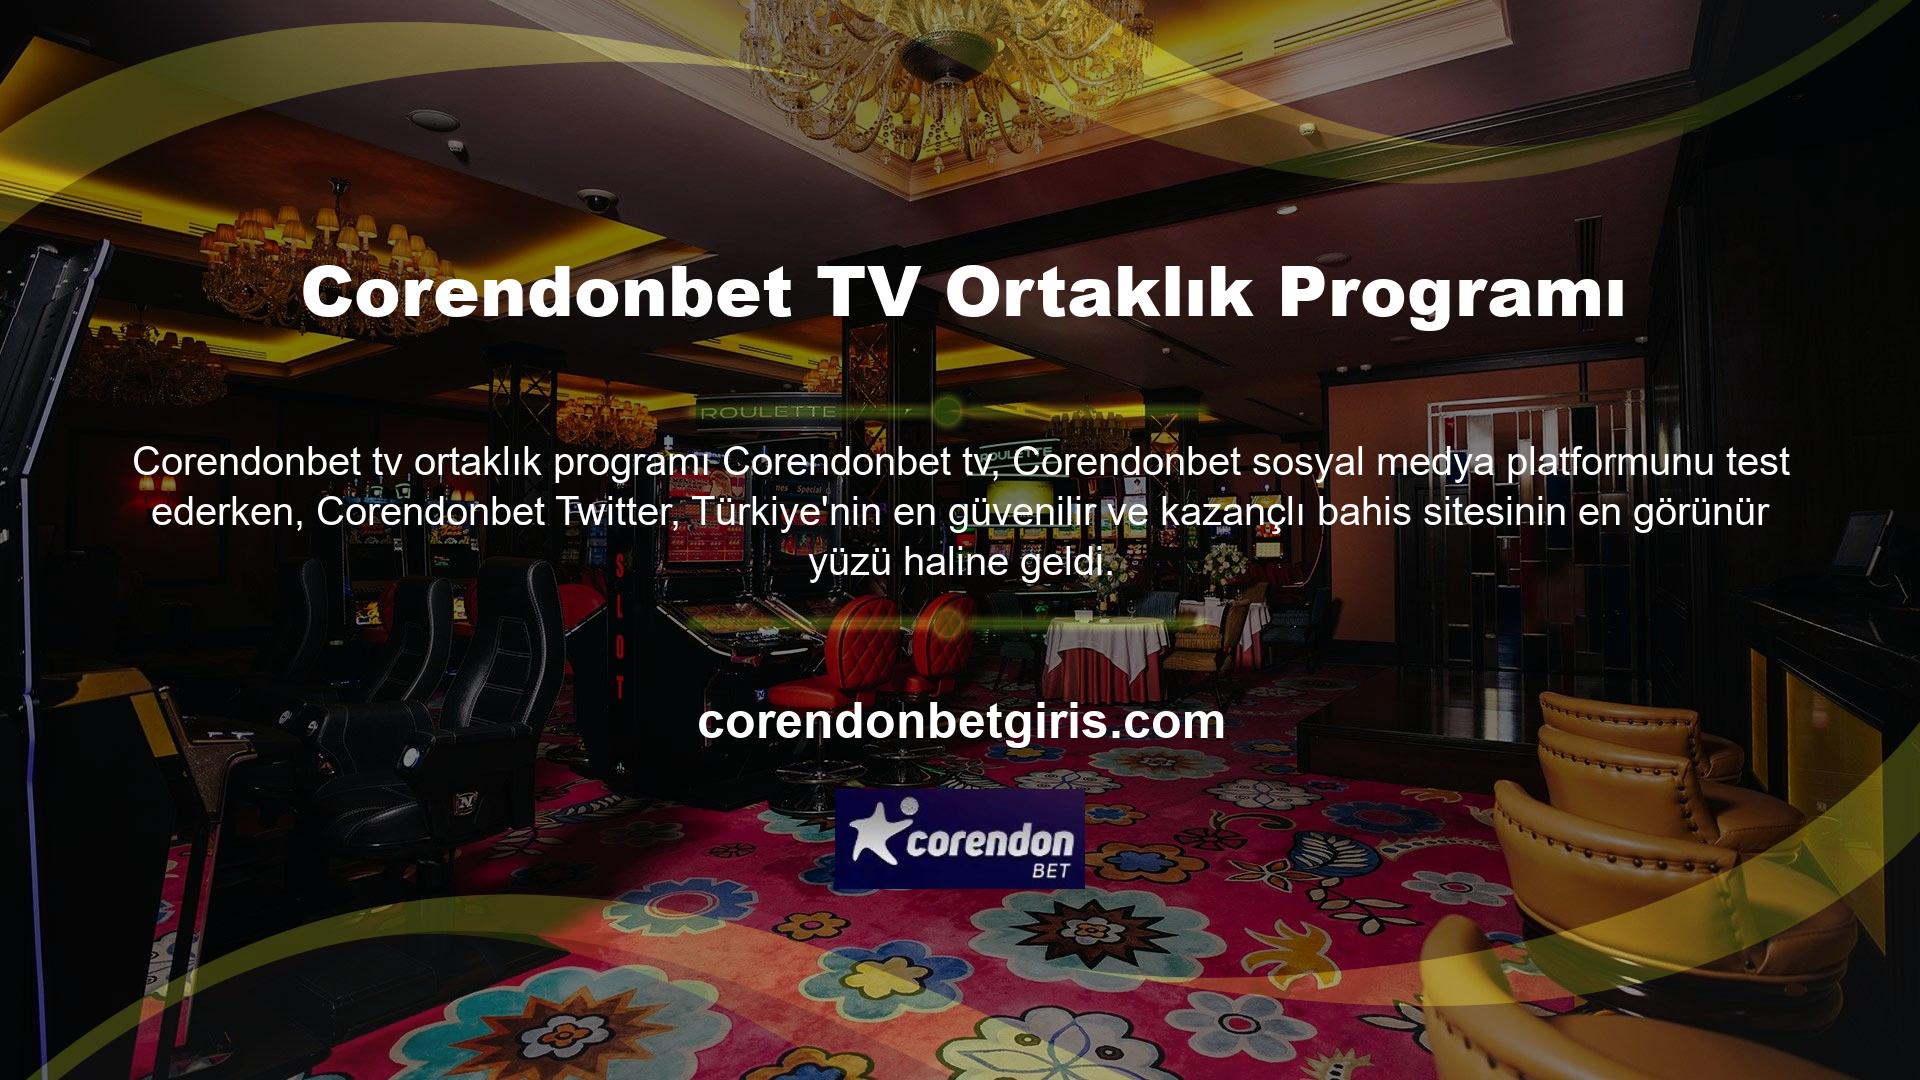 Tek yapmanız gereken bu Twitter platformuna üye olmak ve Corendonbet TV ortaklık programının programını dikkatle takip etmektir